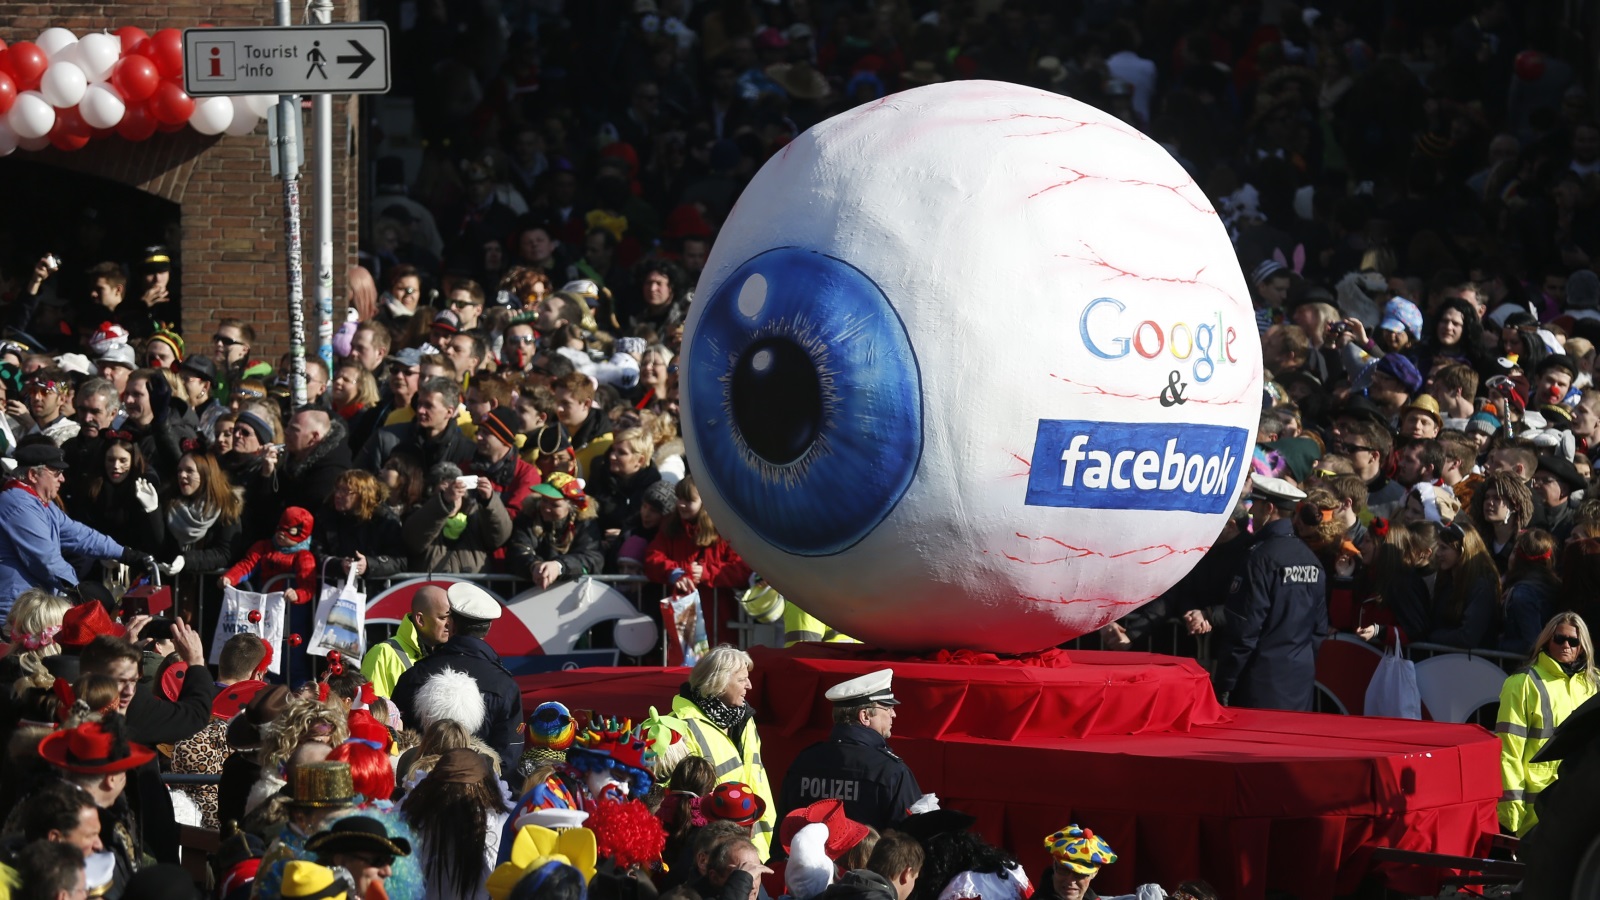 ‪(رويترز)‬ غوغل تعمل بشكل أكثر شفافية مقارنة بفيسبوك بحسب الخبراء الأمنيين